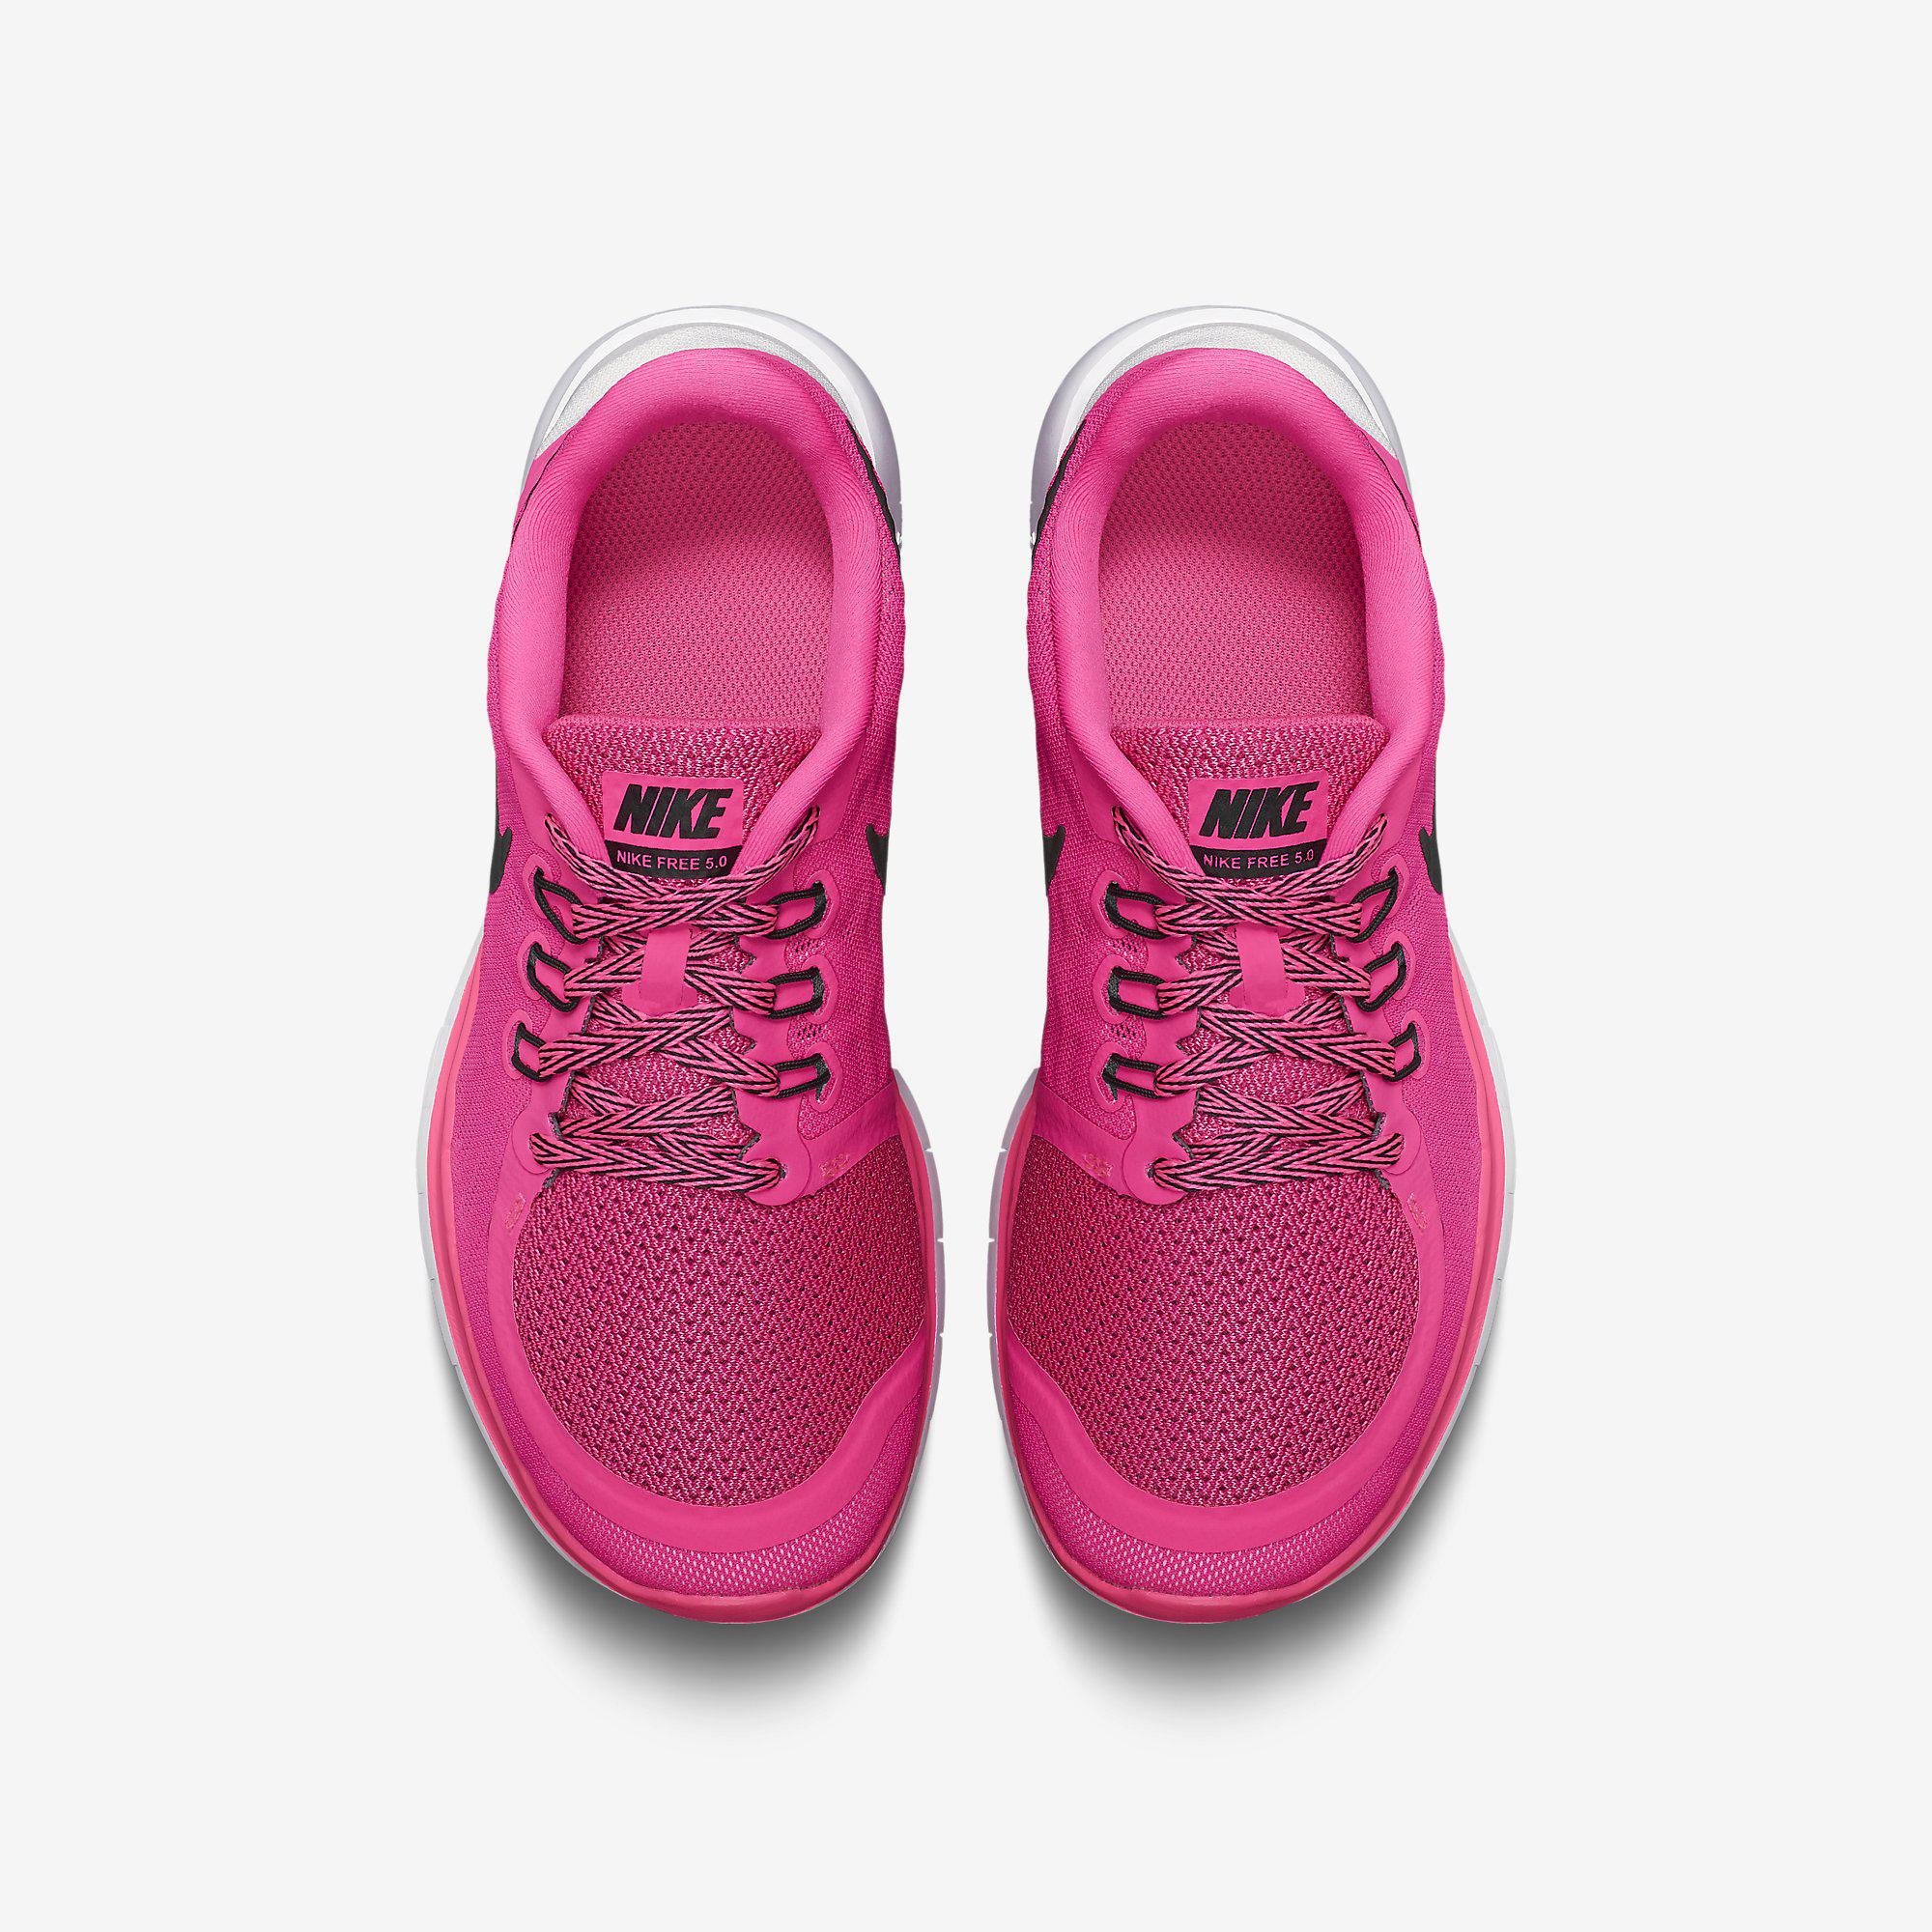 Nike Girls Free 5.0 Running Shoes Pink Pow/Vivid Pink